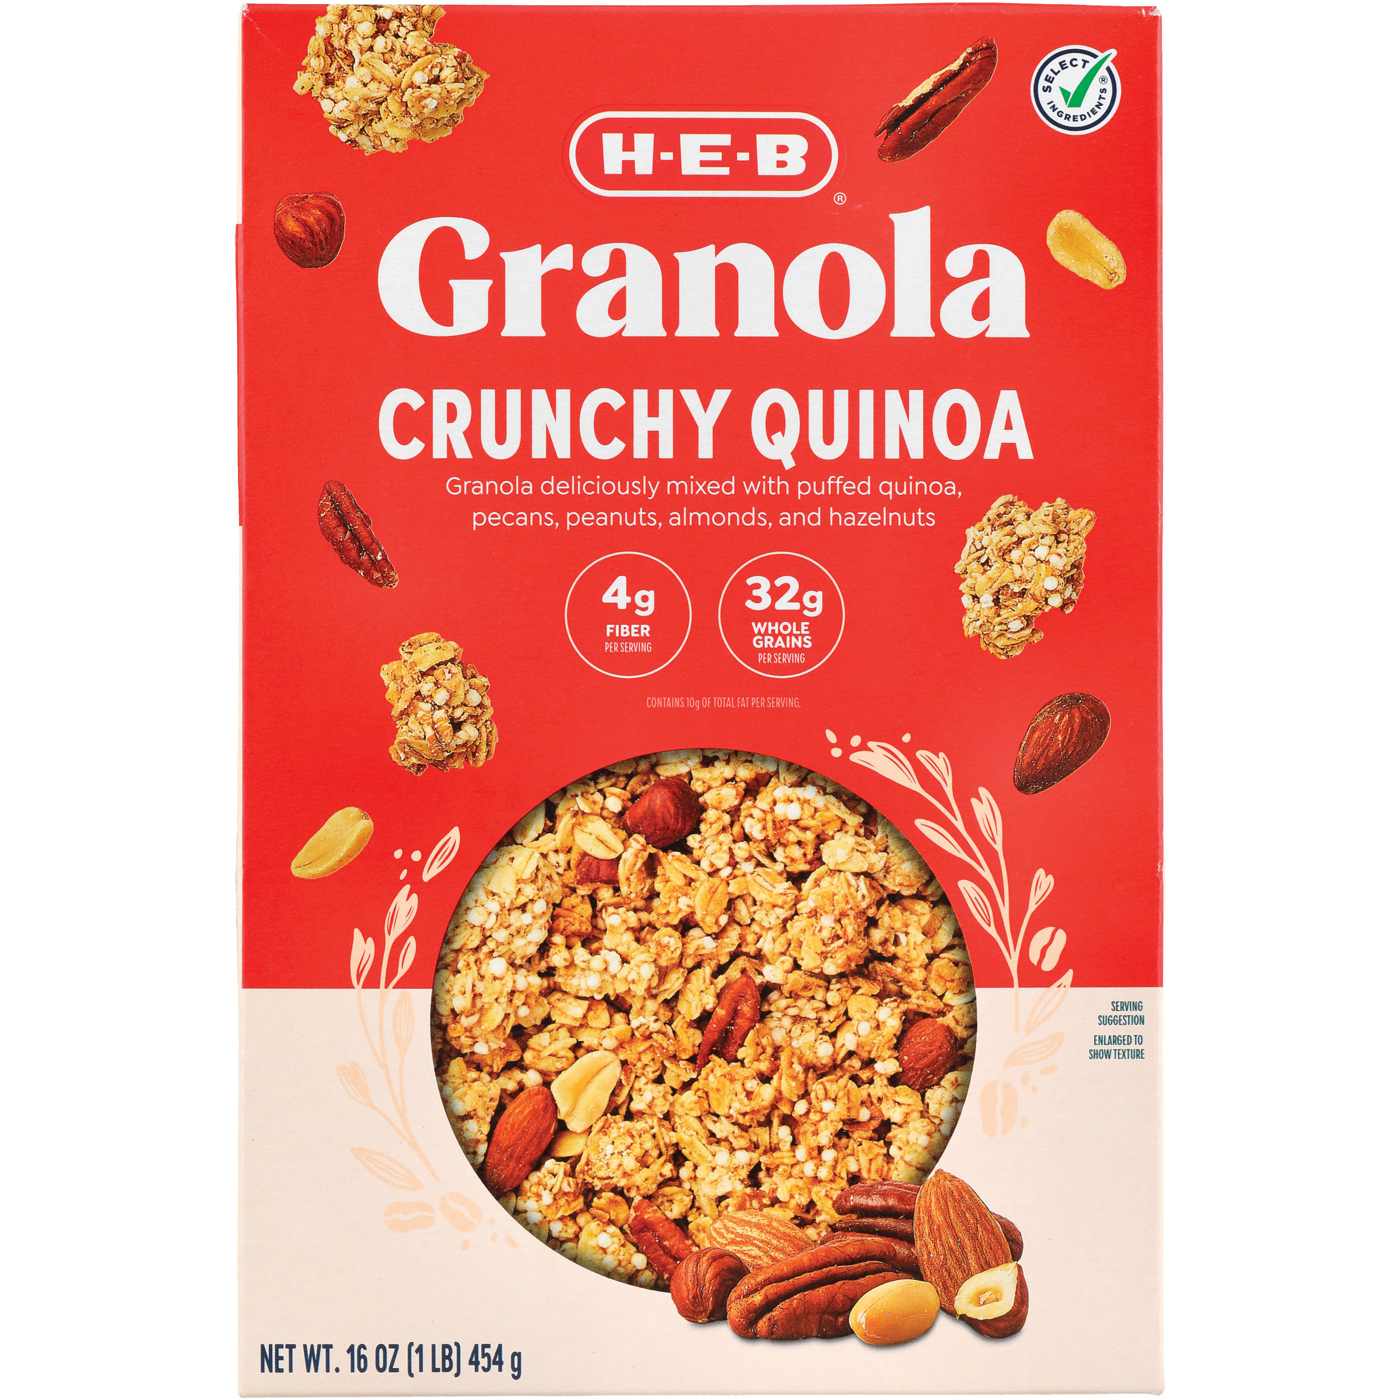 H-E-B Crunchy Quinoa Granola; image 1 of 2